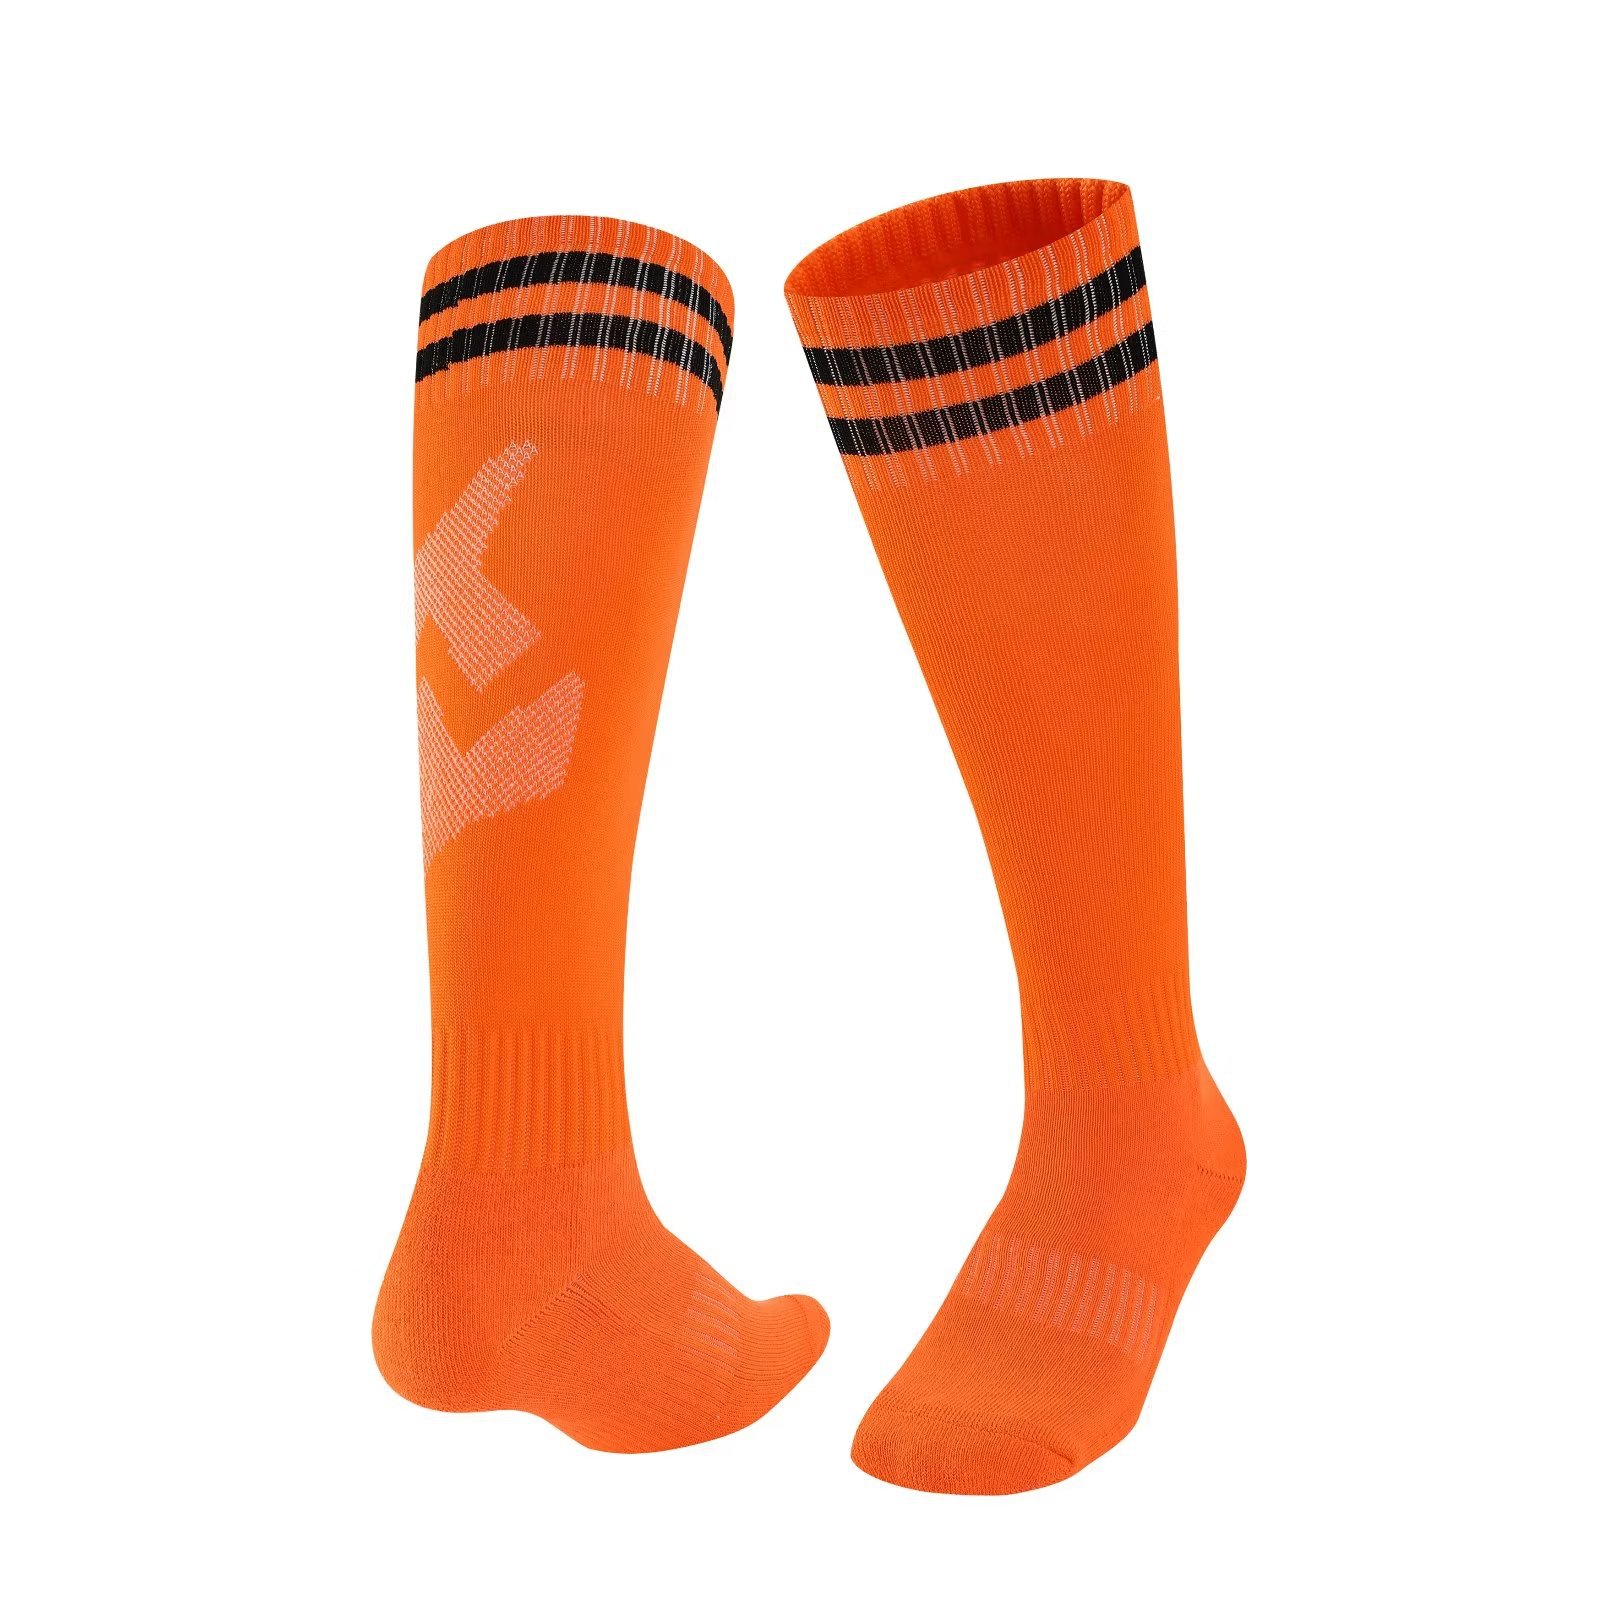 Socks logo child football socks for 6 year kids anti-slip socks for children